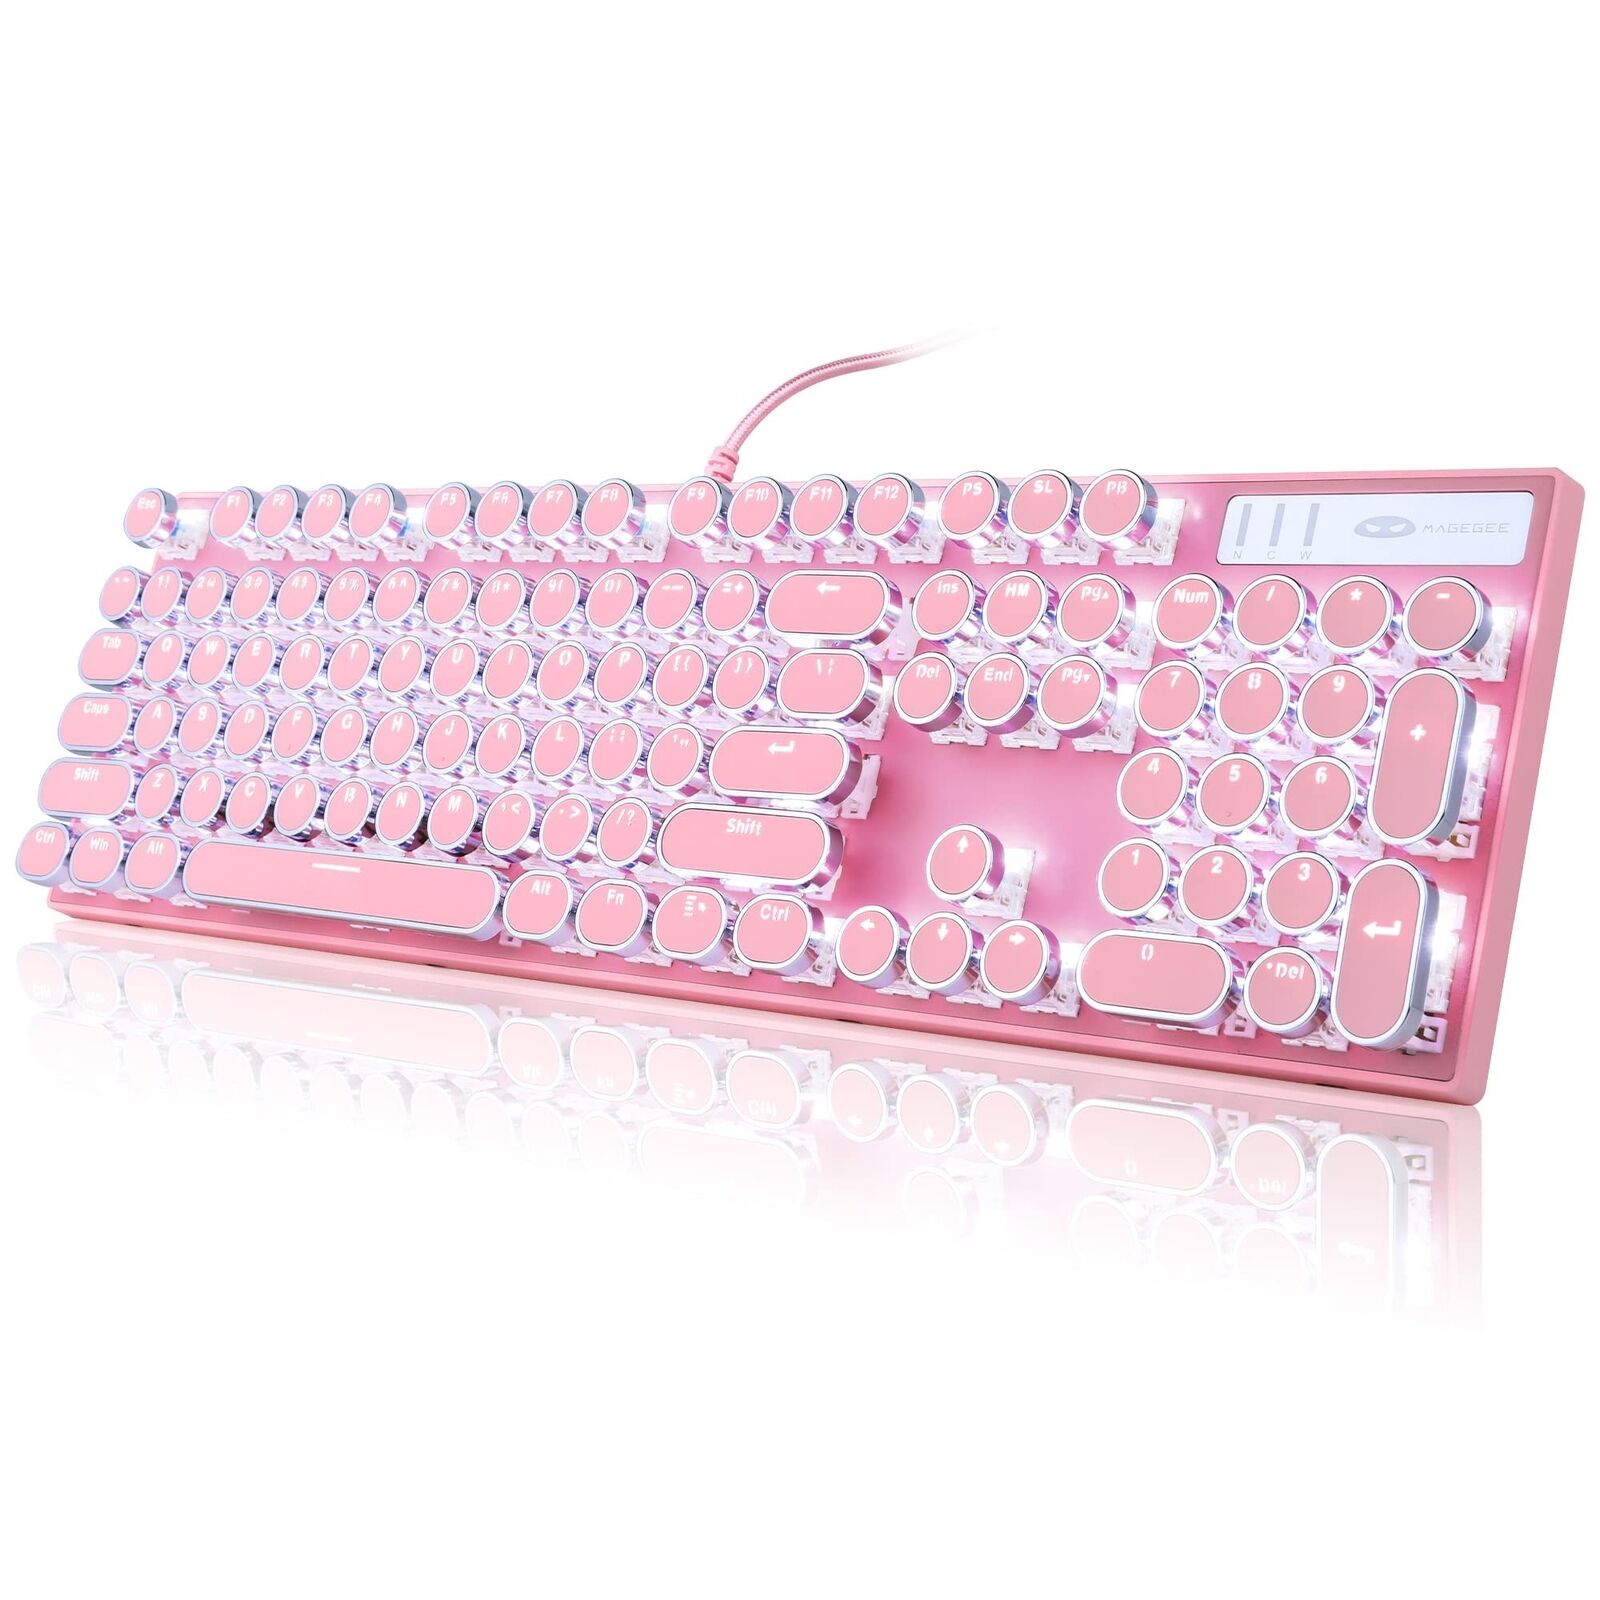 Camiysn Typewriter Style Mechanical Gaming Keyboard, Pink Retro Punk Gaming K...